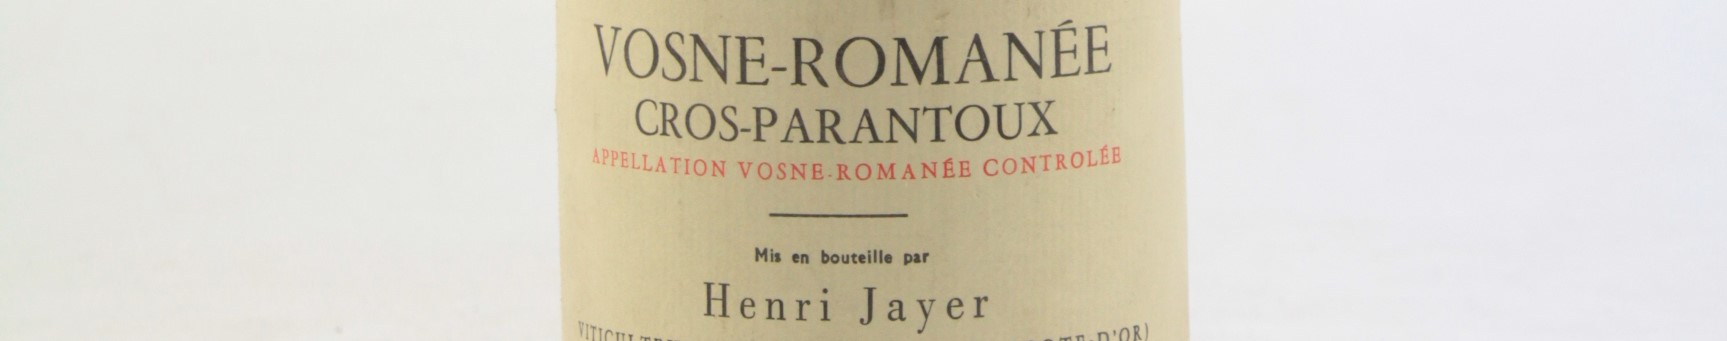 La photo montre une bouteille de vin de Nuits saint georges 1er cru cros parantoux du Domaine Henri Jayer situé à vosne romanée en Bourgogne